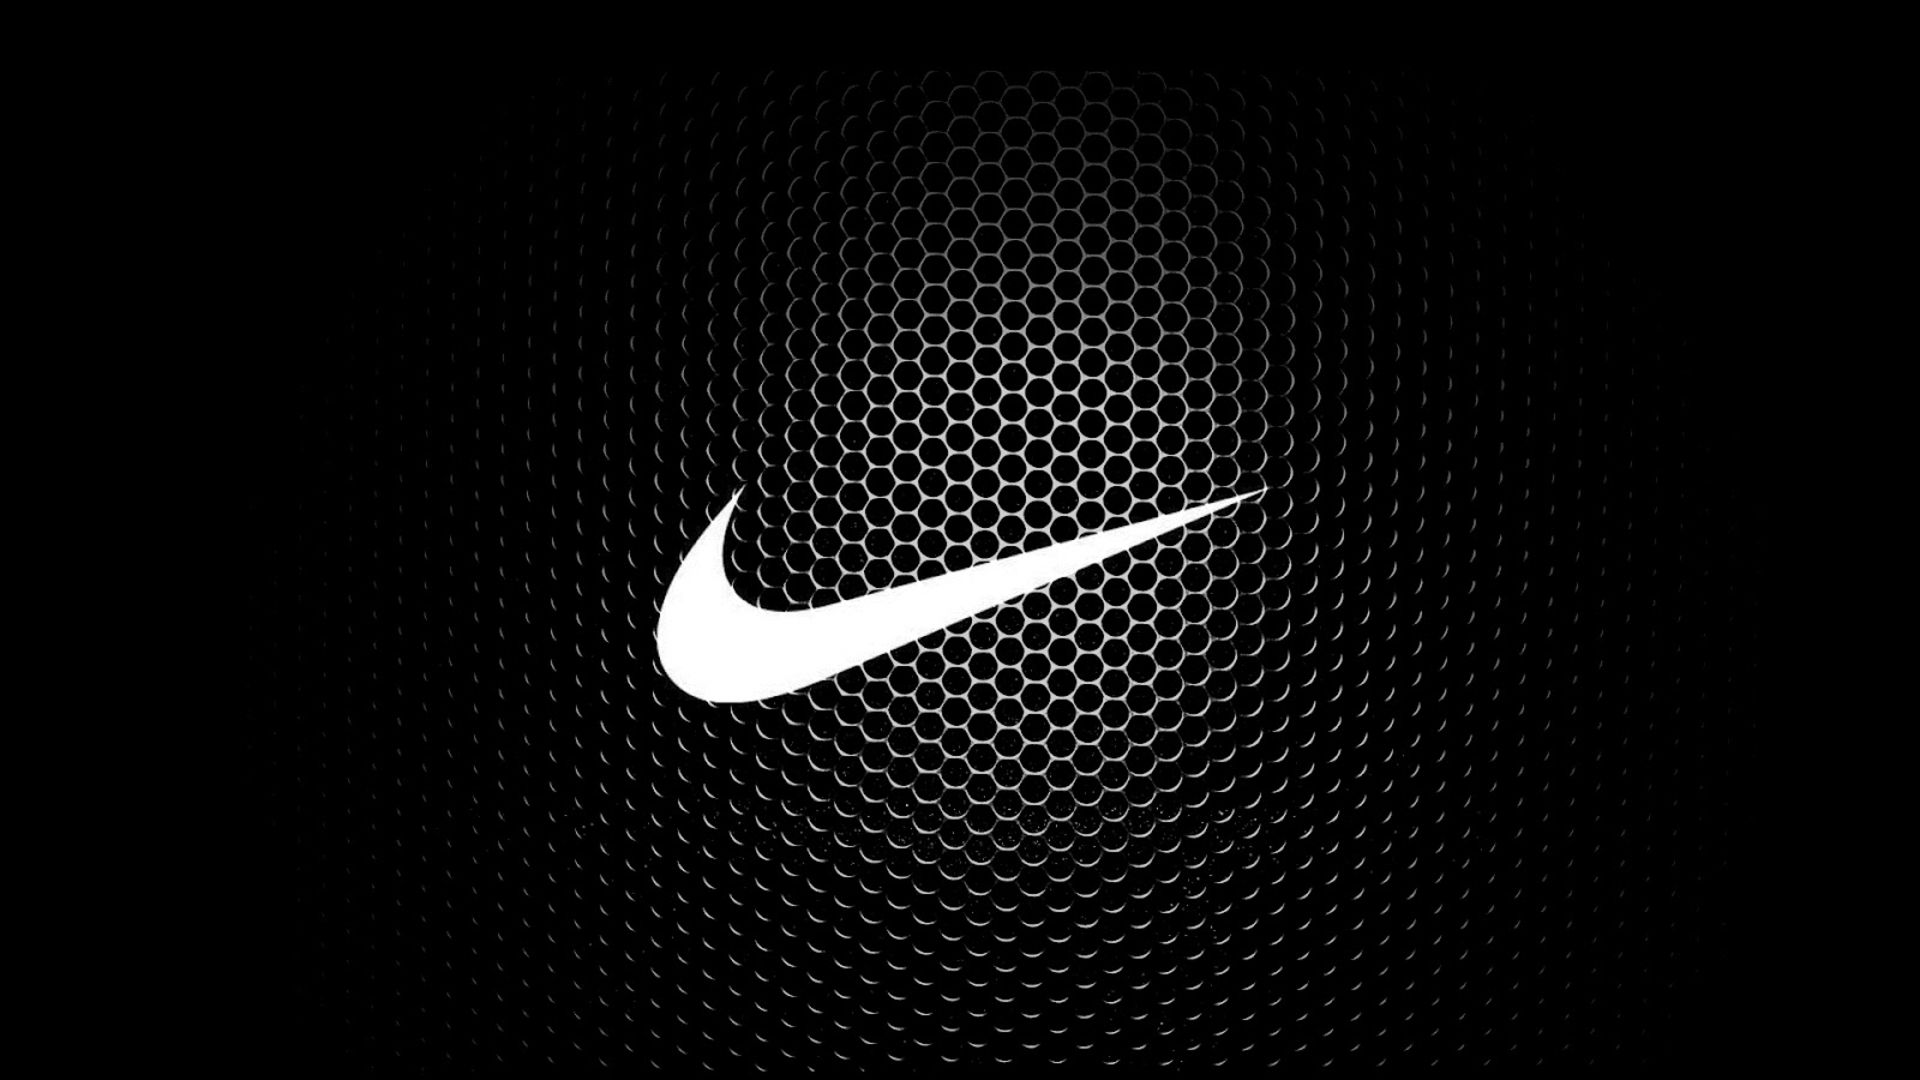 Với hình nền Nike đen đầy ấn tượng, bạn sẽ có một màn hình điện thoại đẹp và cá tính, tạo nên điểm nhấn cho thiết bị của mình. Không chỉ có phong cách thể thao mà còn toát lên sự phong độ và chất lừ của người sử dụng.